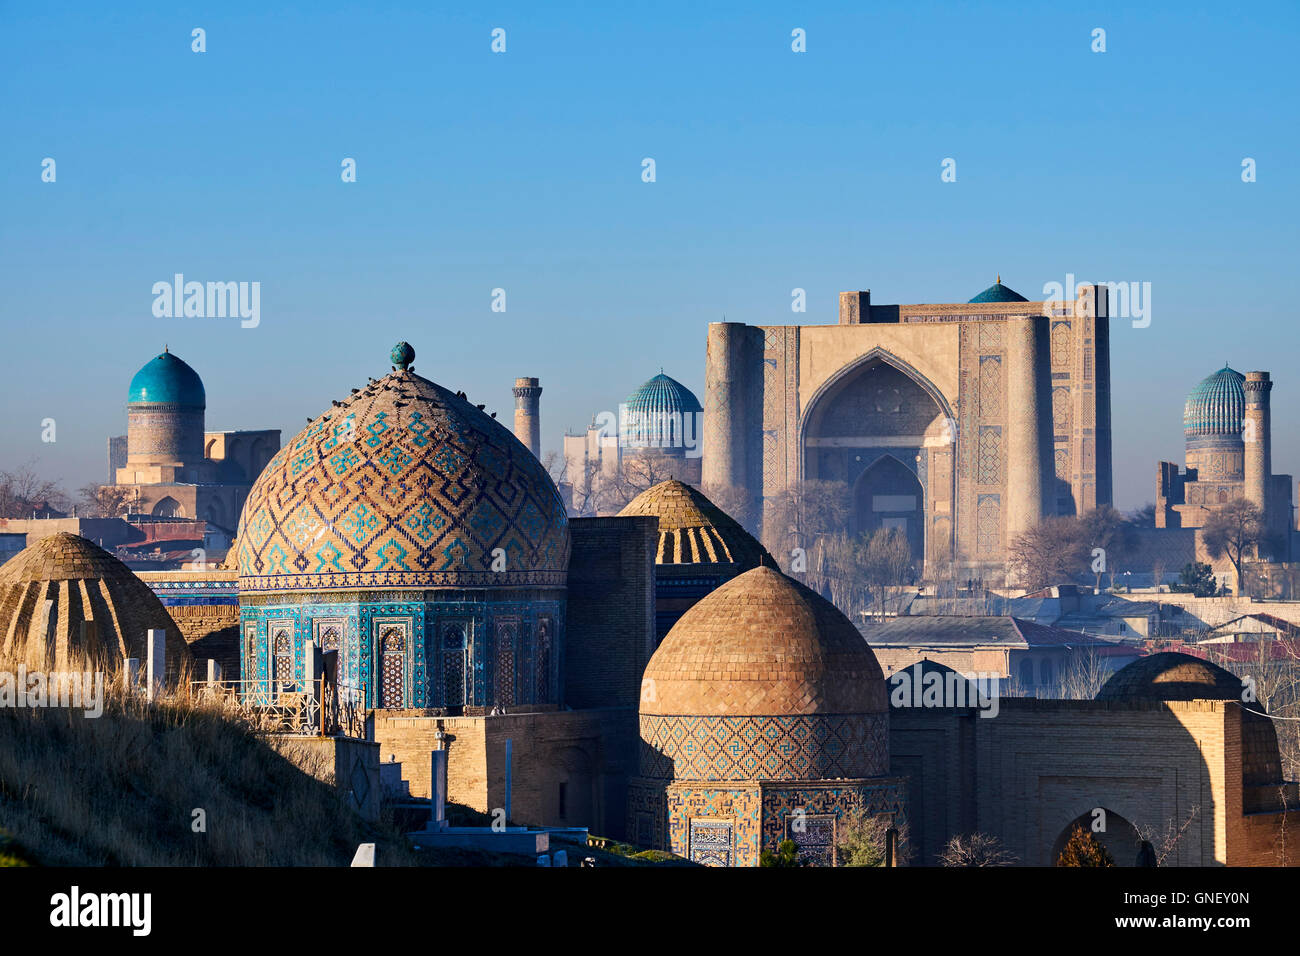 L'Ouzbékistan, Samarkand, Patrimoine Mondial de l'UNESCO, le Reghistan, Shah i Zinda, le mausolée de la mosquée Bibi Khanoum Banque D'Images